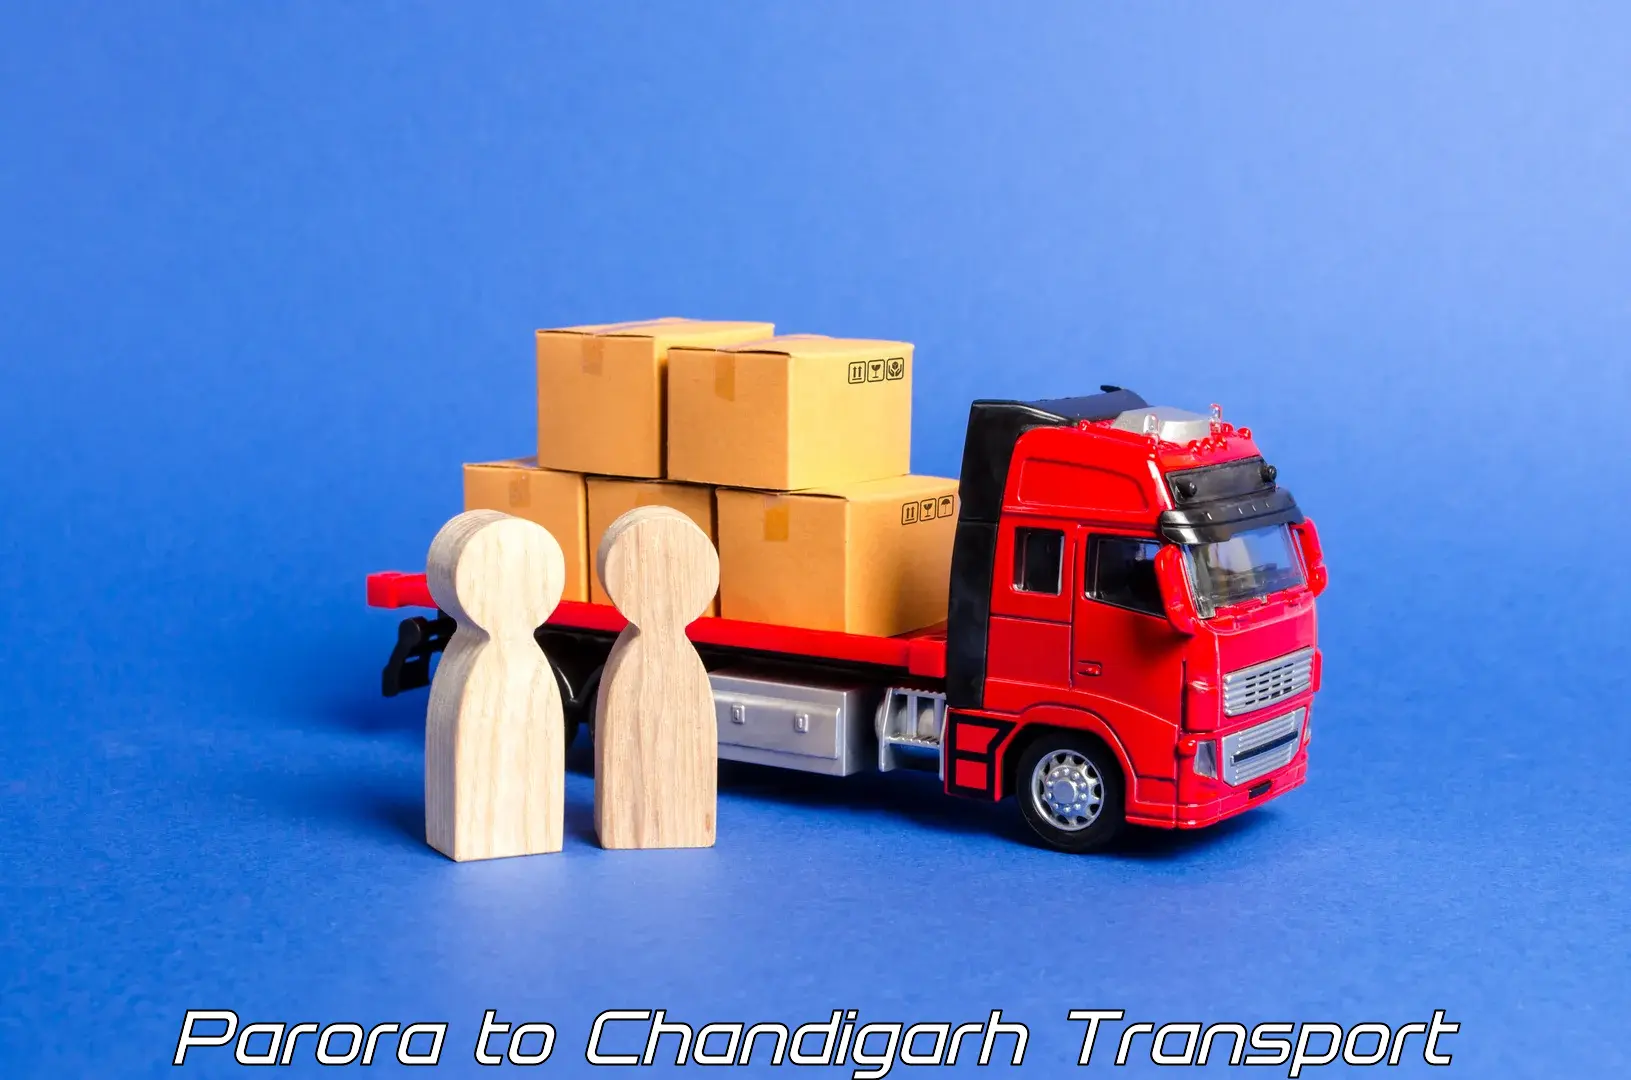 Two wheeler parcel service Parora to Chandigarh